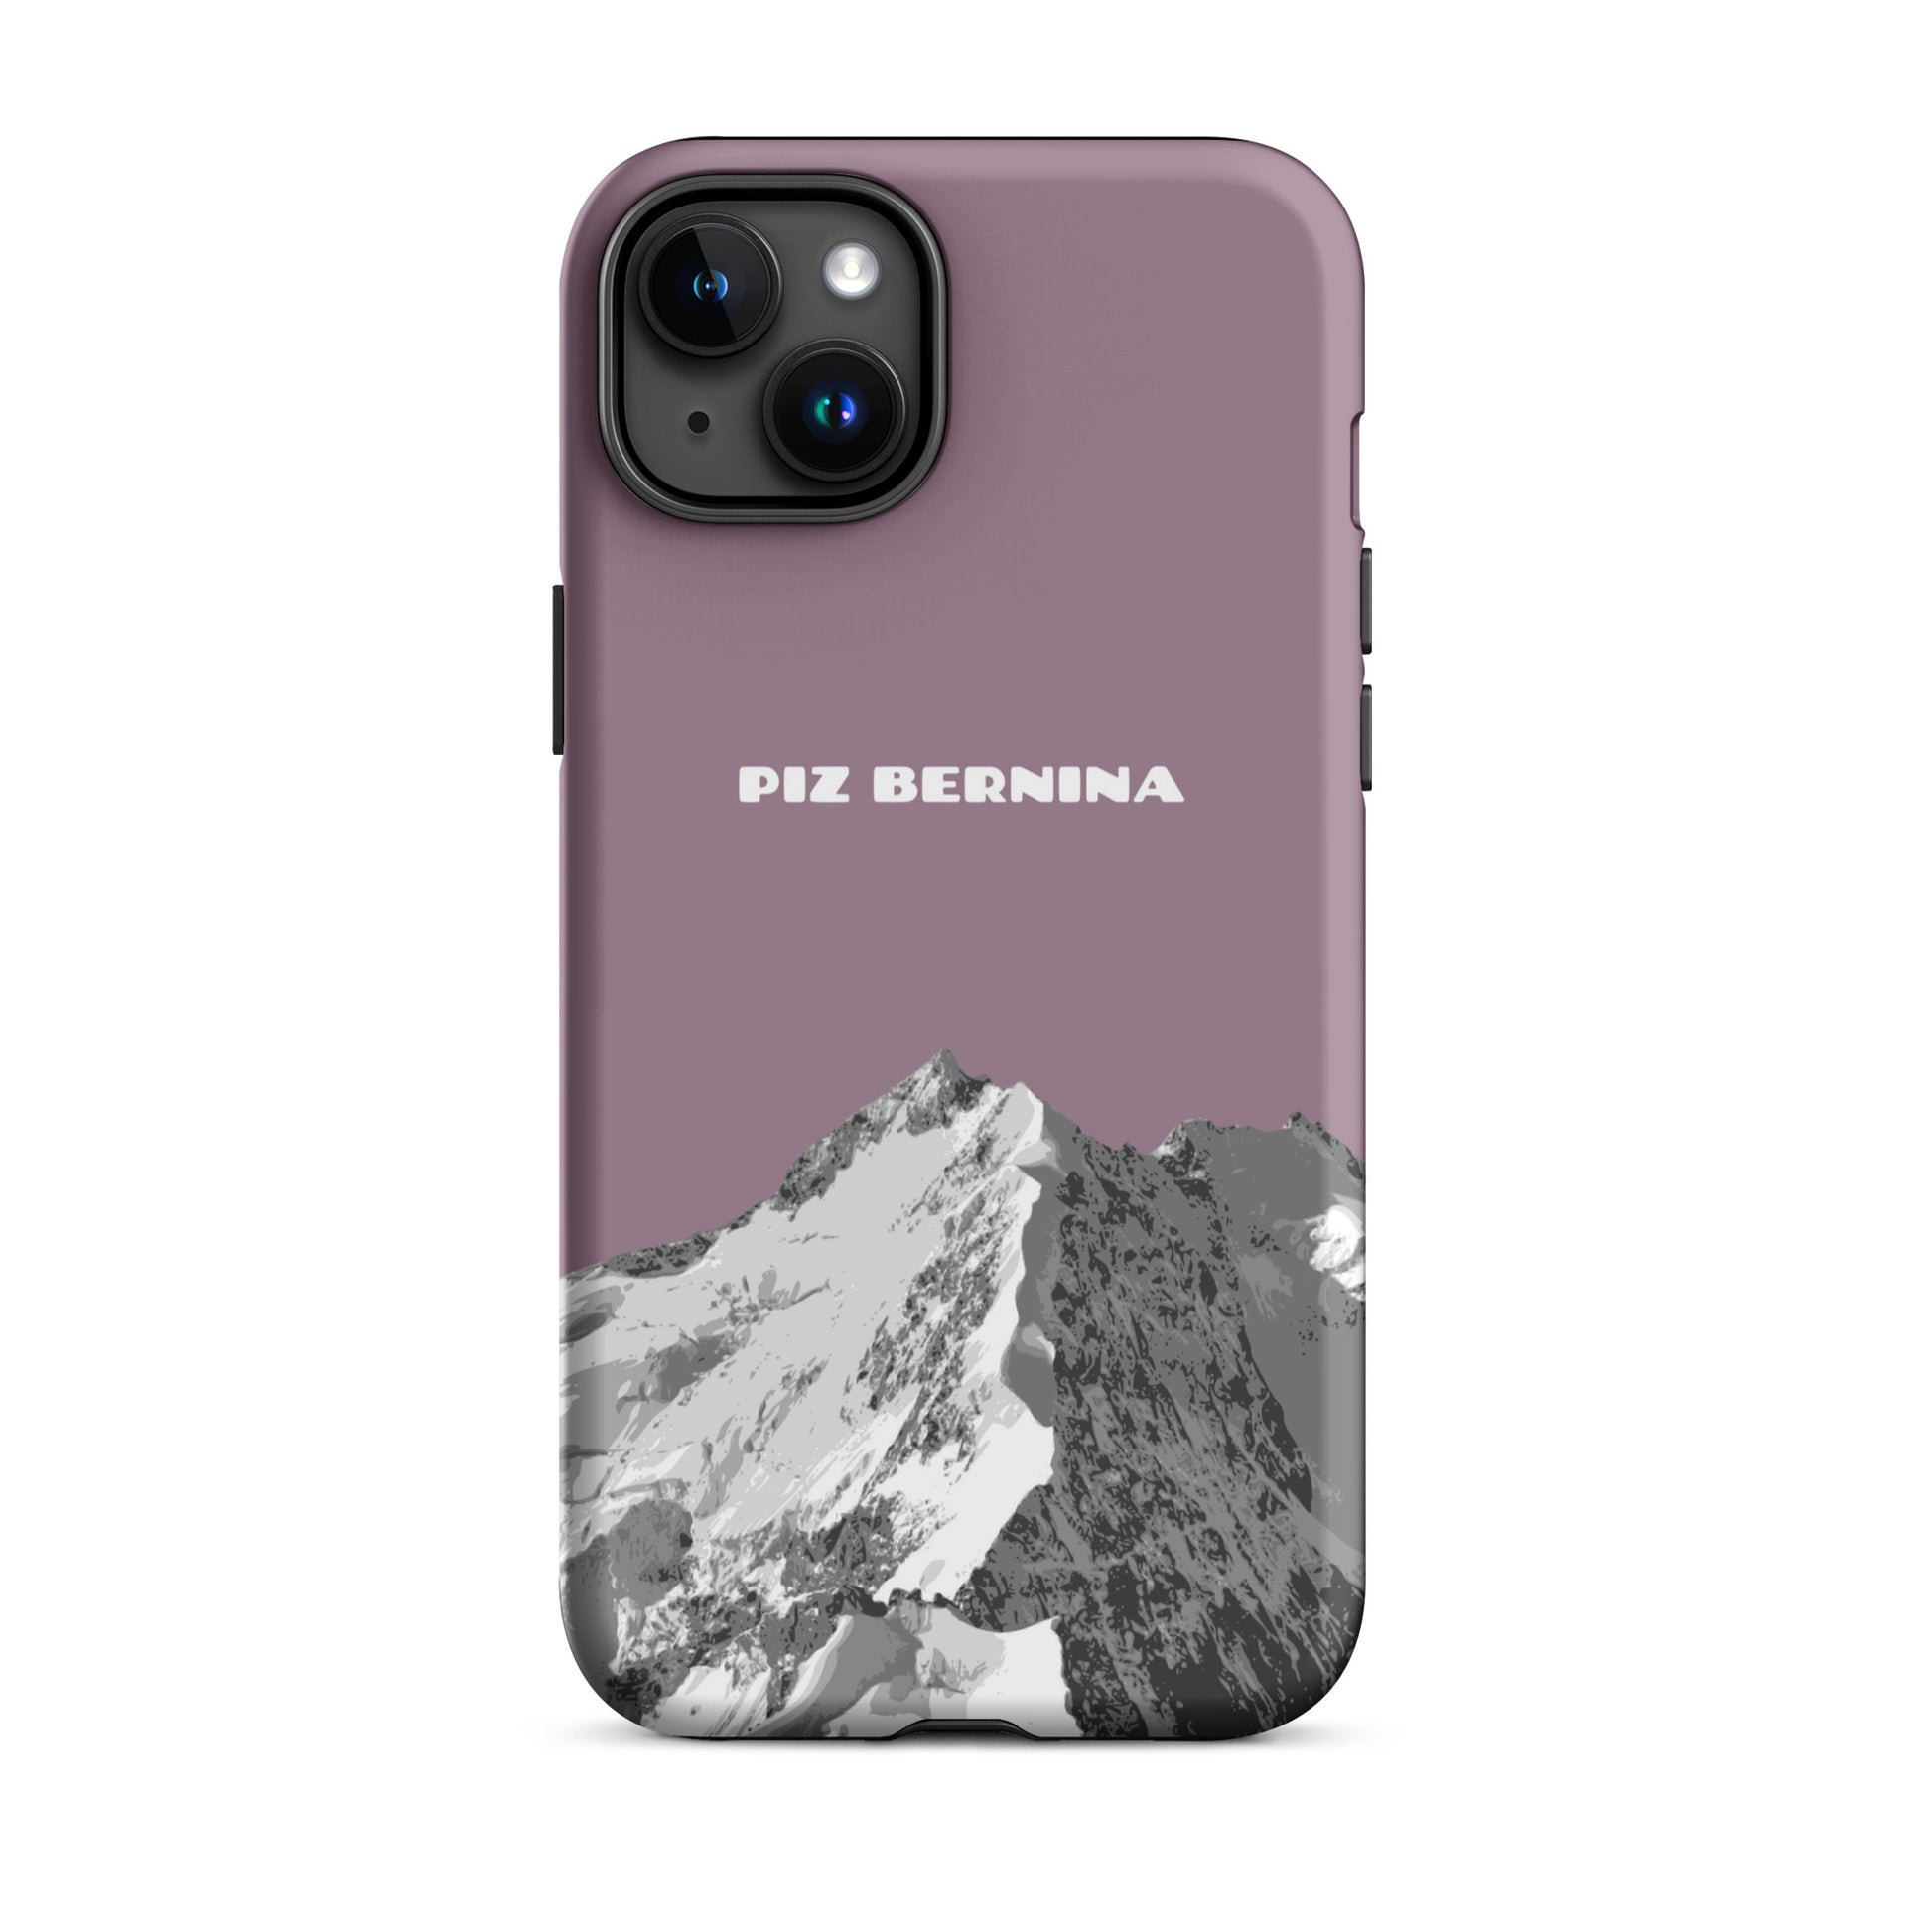 Hülle für das iPhone 15 Plus von Apple in der Farbe Pastellviolett, dass den Piz Bernina in Graubünden zeigt.